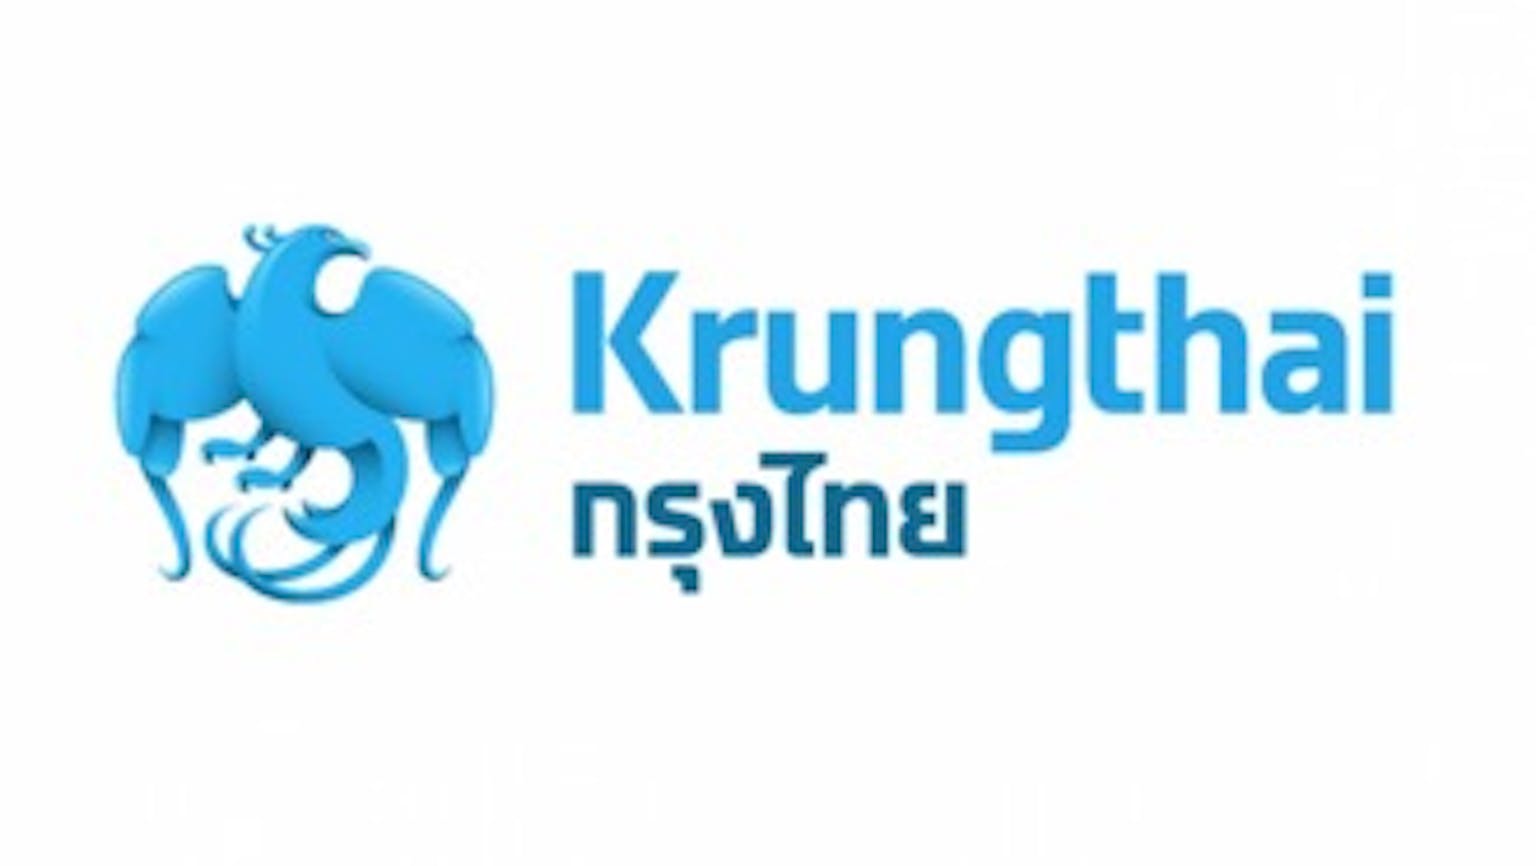 ถ้านิติบุคคลเปิดบัญชีเงินฝากออมทรัพย์ Ktb ของธนาคารกรุงไทย  จะได้ดอกเบี้ยปีละเท่าไหร่ครับ? | Moneyduck Thailand